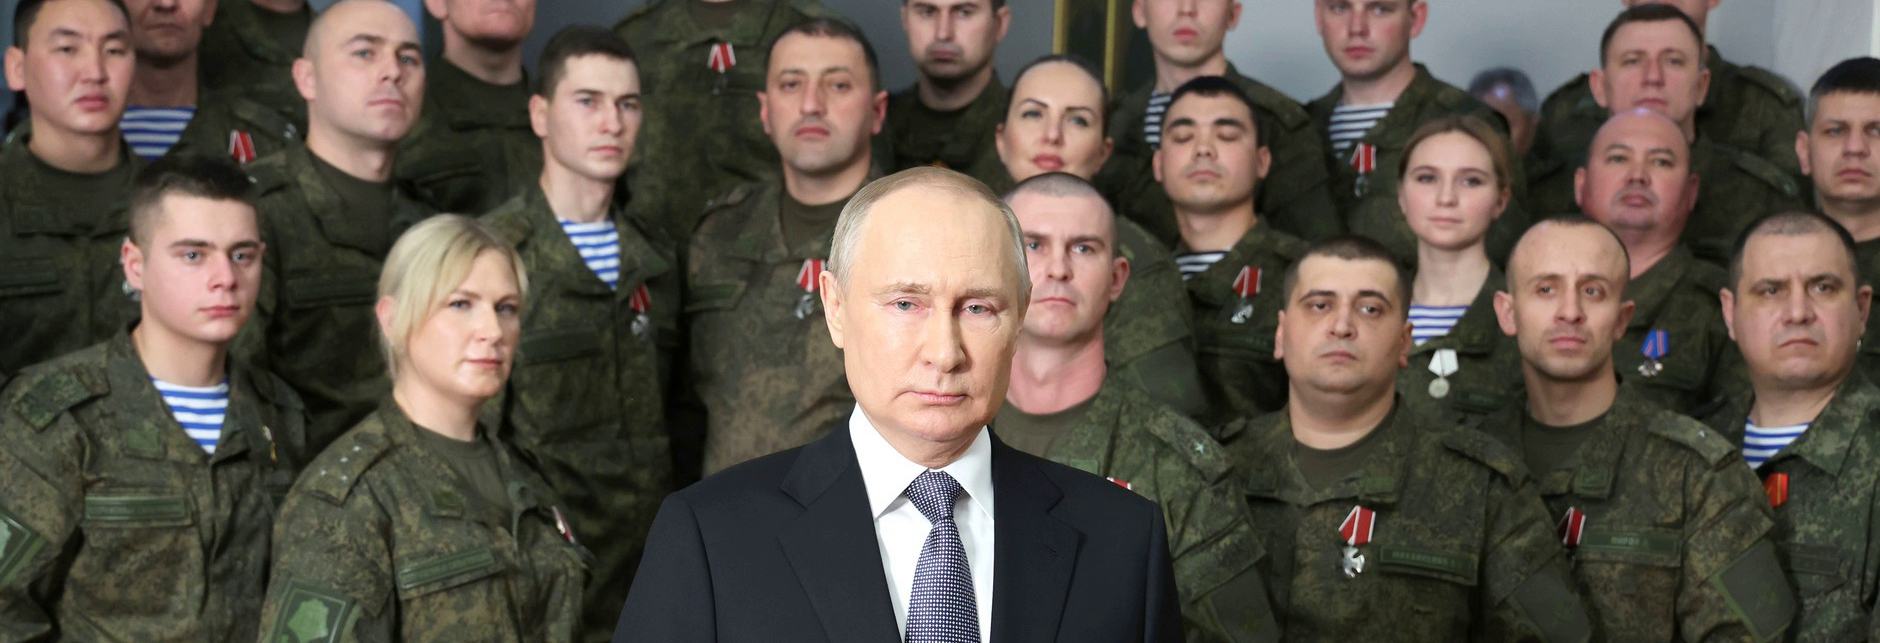 Uniformen statt Kremltürme: Neujahrsansprache des russischen Präsidenten